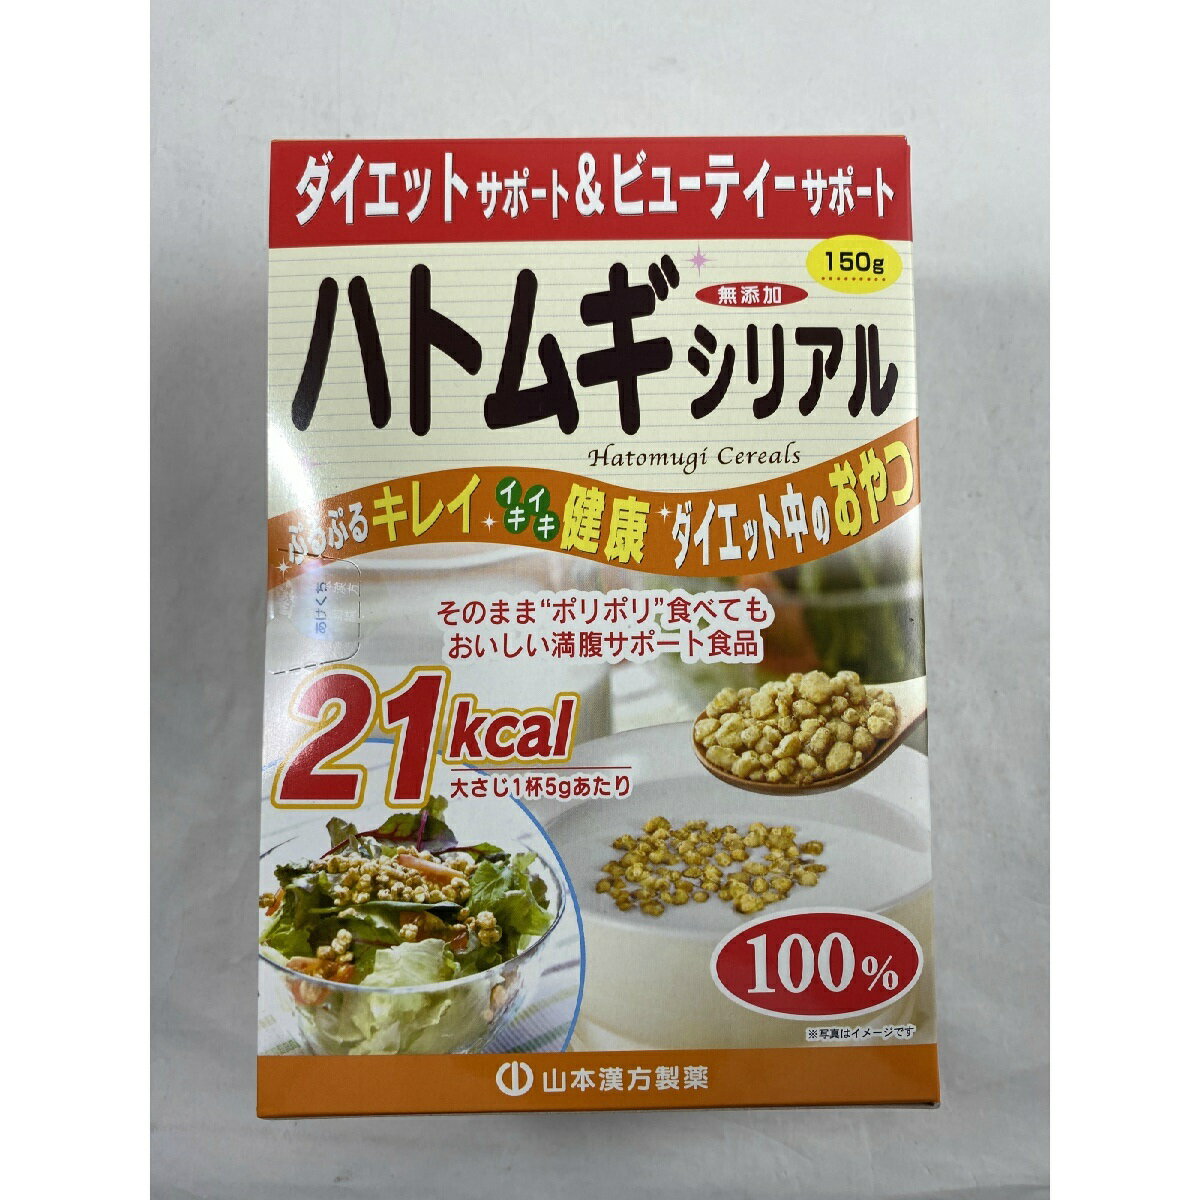 【×2箱セット送料込み】山本漢方製薬 ハトムギシリアル 150g　雑穀シリアル シリアル類 穀物・豆・麺類 少量でも満足感があり食べ過ぎもセーブできます。ダイエットサポート食品として、美容と健康にお役立てください